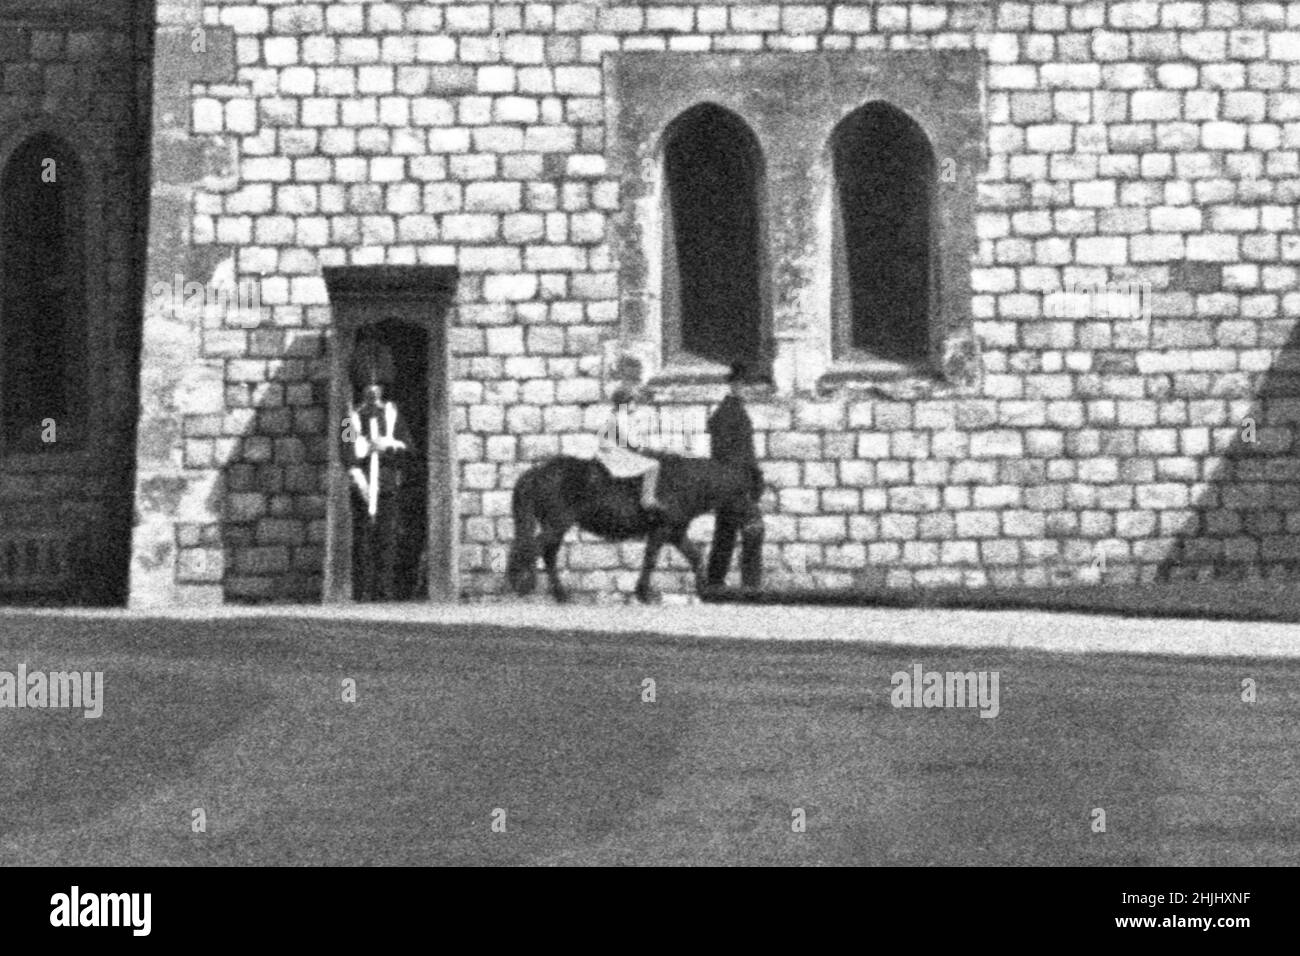 Photo de dossier de la 1930s de la princesse Elizabeth à cheval dans le domaine du château de Windsor.Plus que tout autre intérêt, les chevaux et les poneys ont été la passion de la Reine tout au long de sa longue vie.Date de publication : dimanche 30 janvier 2022. Banque D'Images